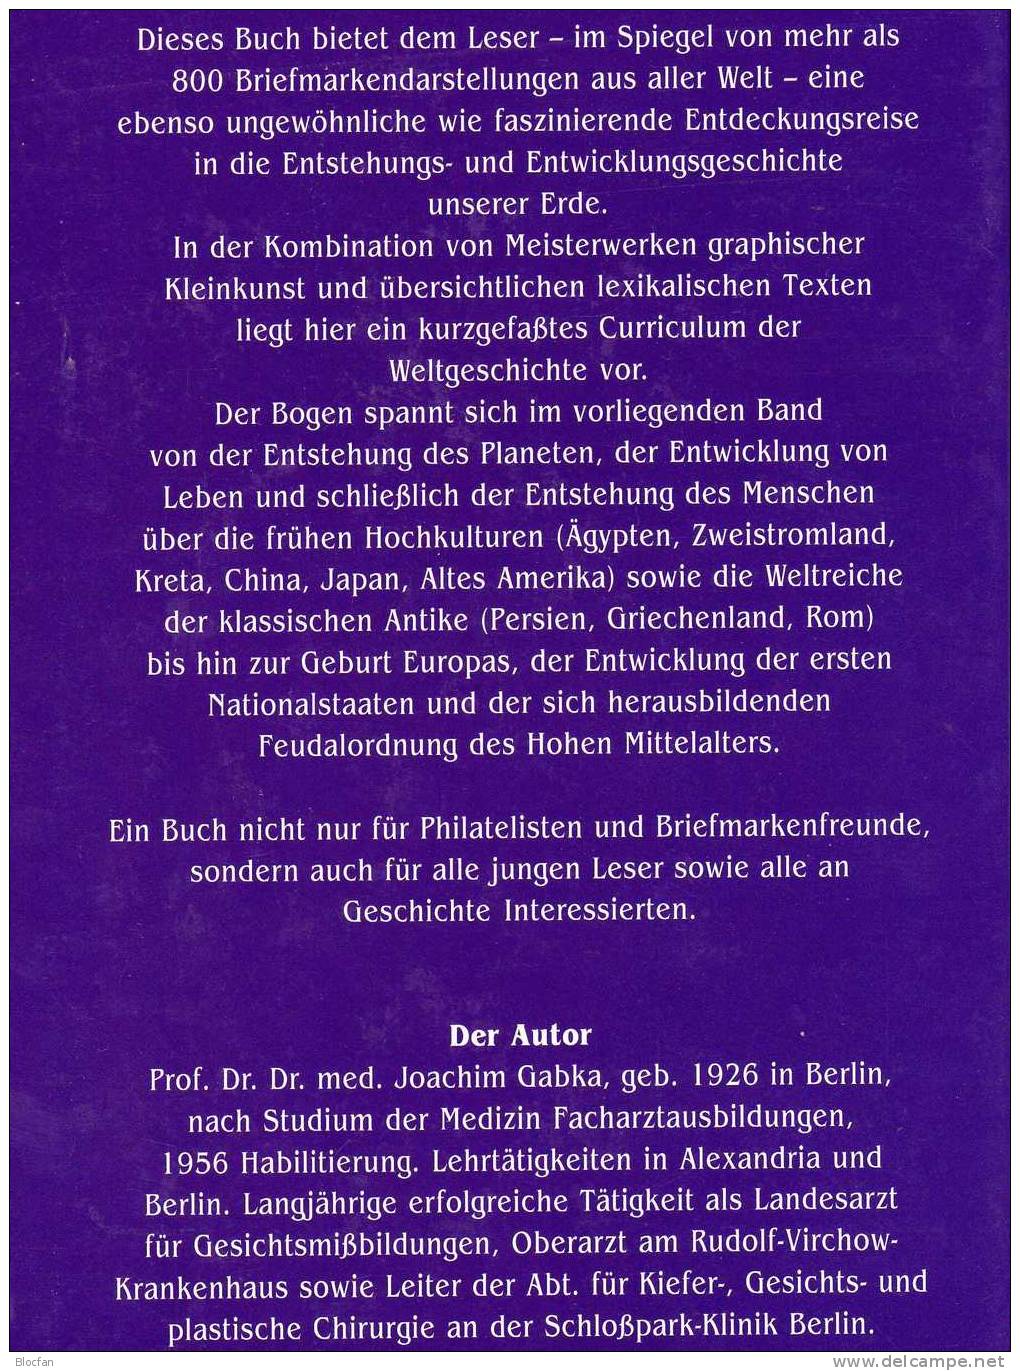 Gabka Band I Weltchronik In Briefmarken 1997 Antiquarisch 56€ Sachbuch Enstehung Der Erde Mit 800 Postwertzeichen Belegt - Chronicles & Annuals